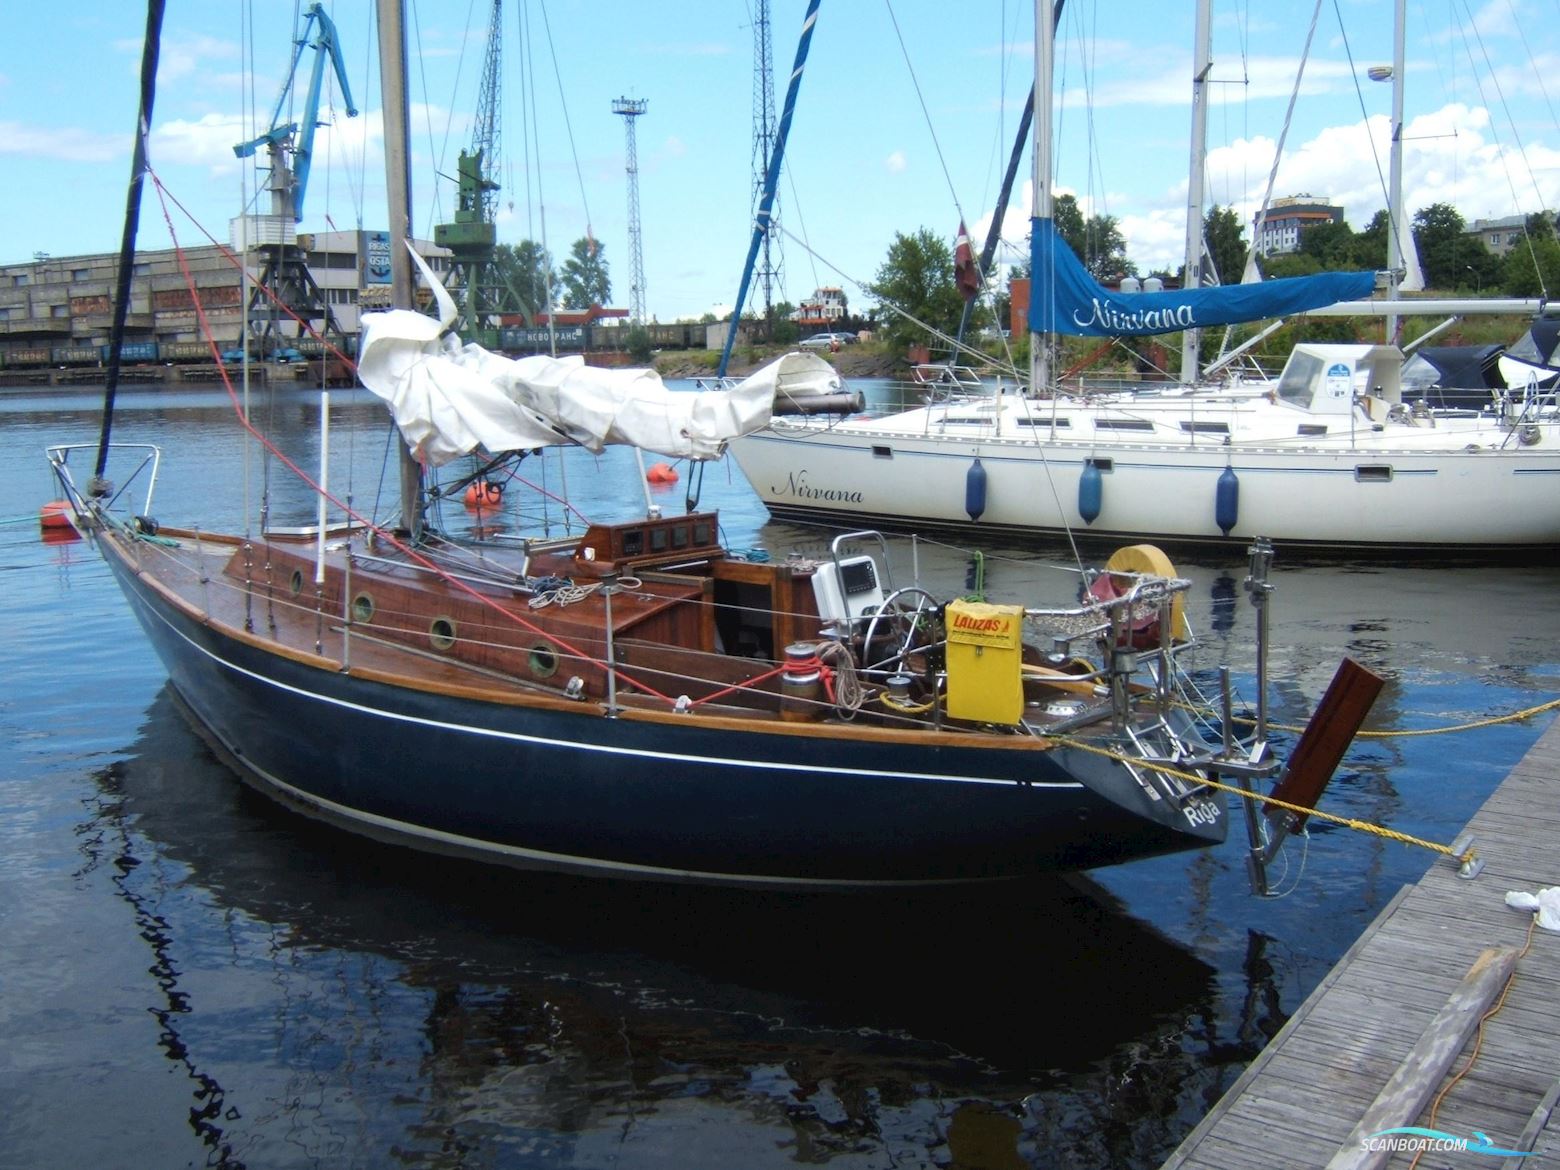 Sparkman & Stephens 34 Sailing boat 1974, with Beta Kubota engine, Latvia